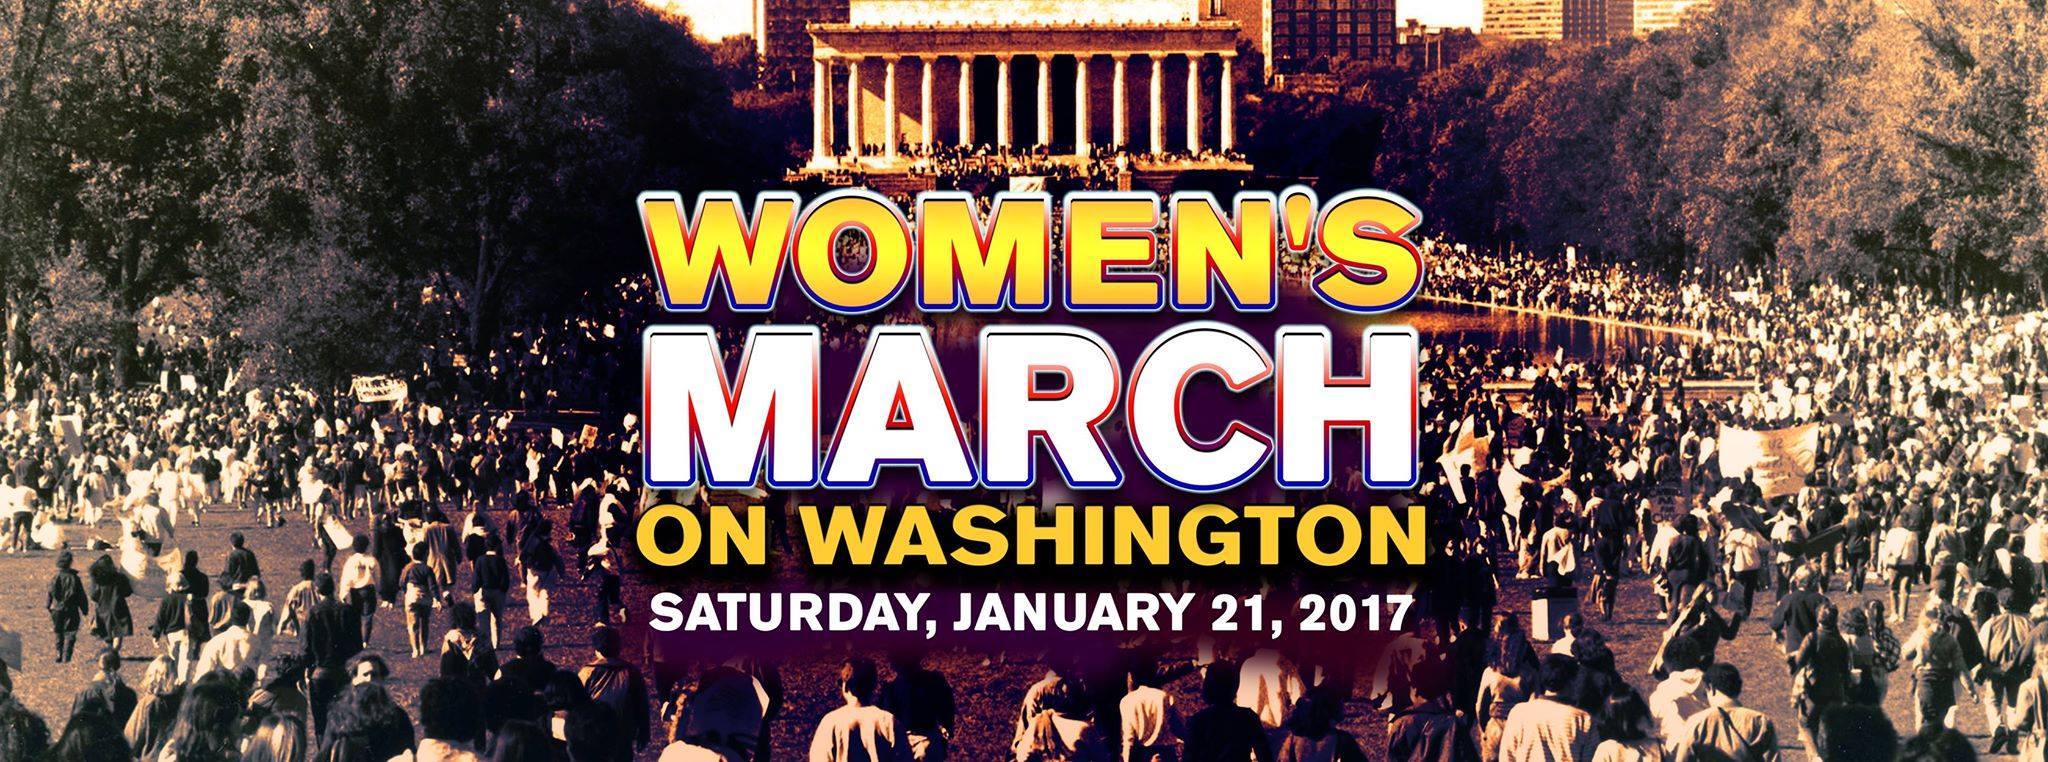 Elmsford trip to Women's March, Jan 21, Washington DC